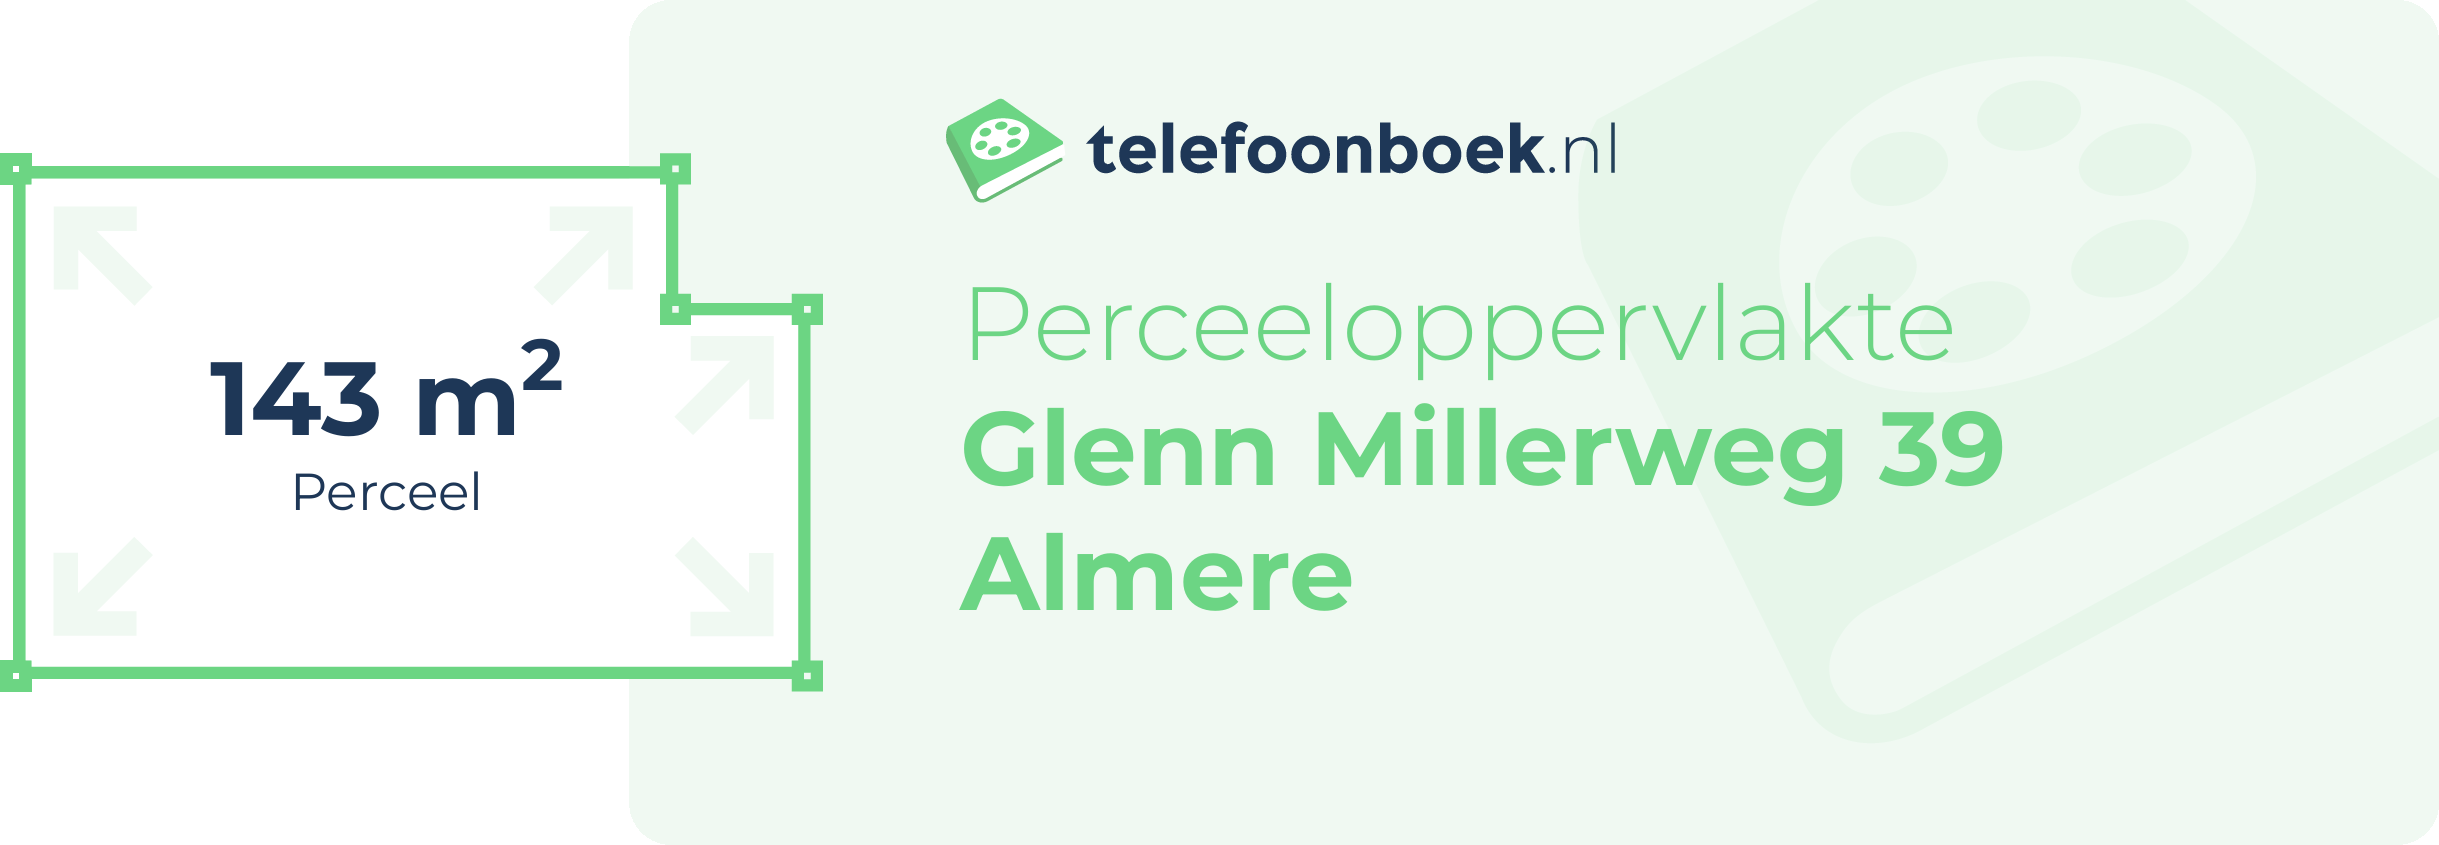 Perceeloppervlakte Glenn Millerweg 39 Almere